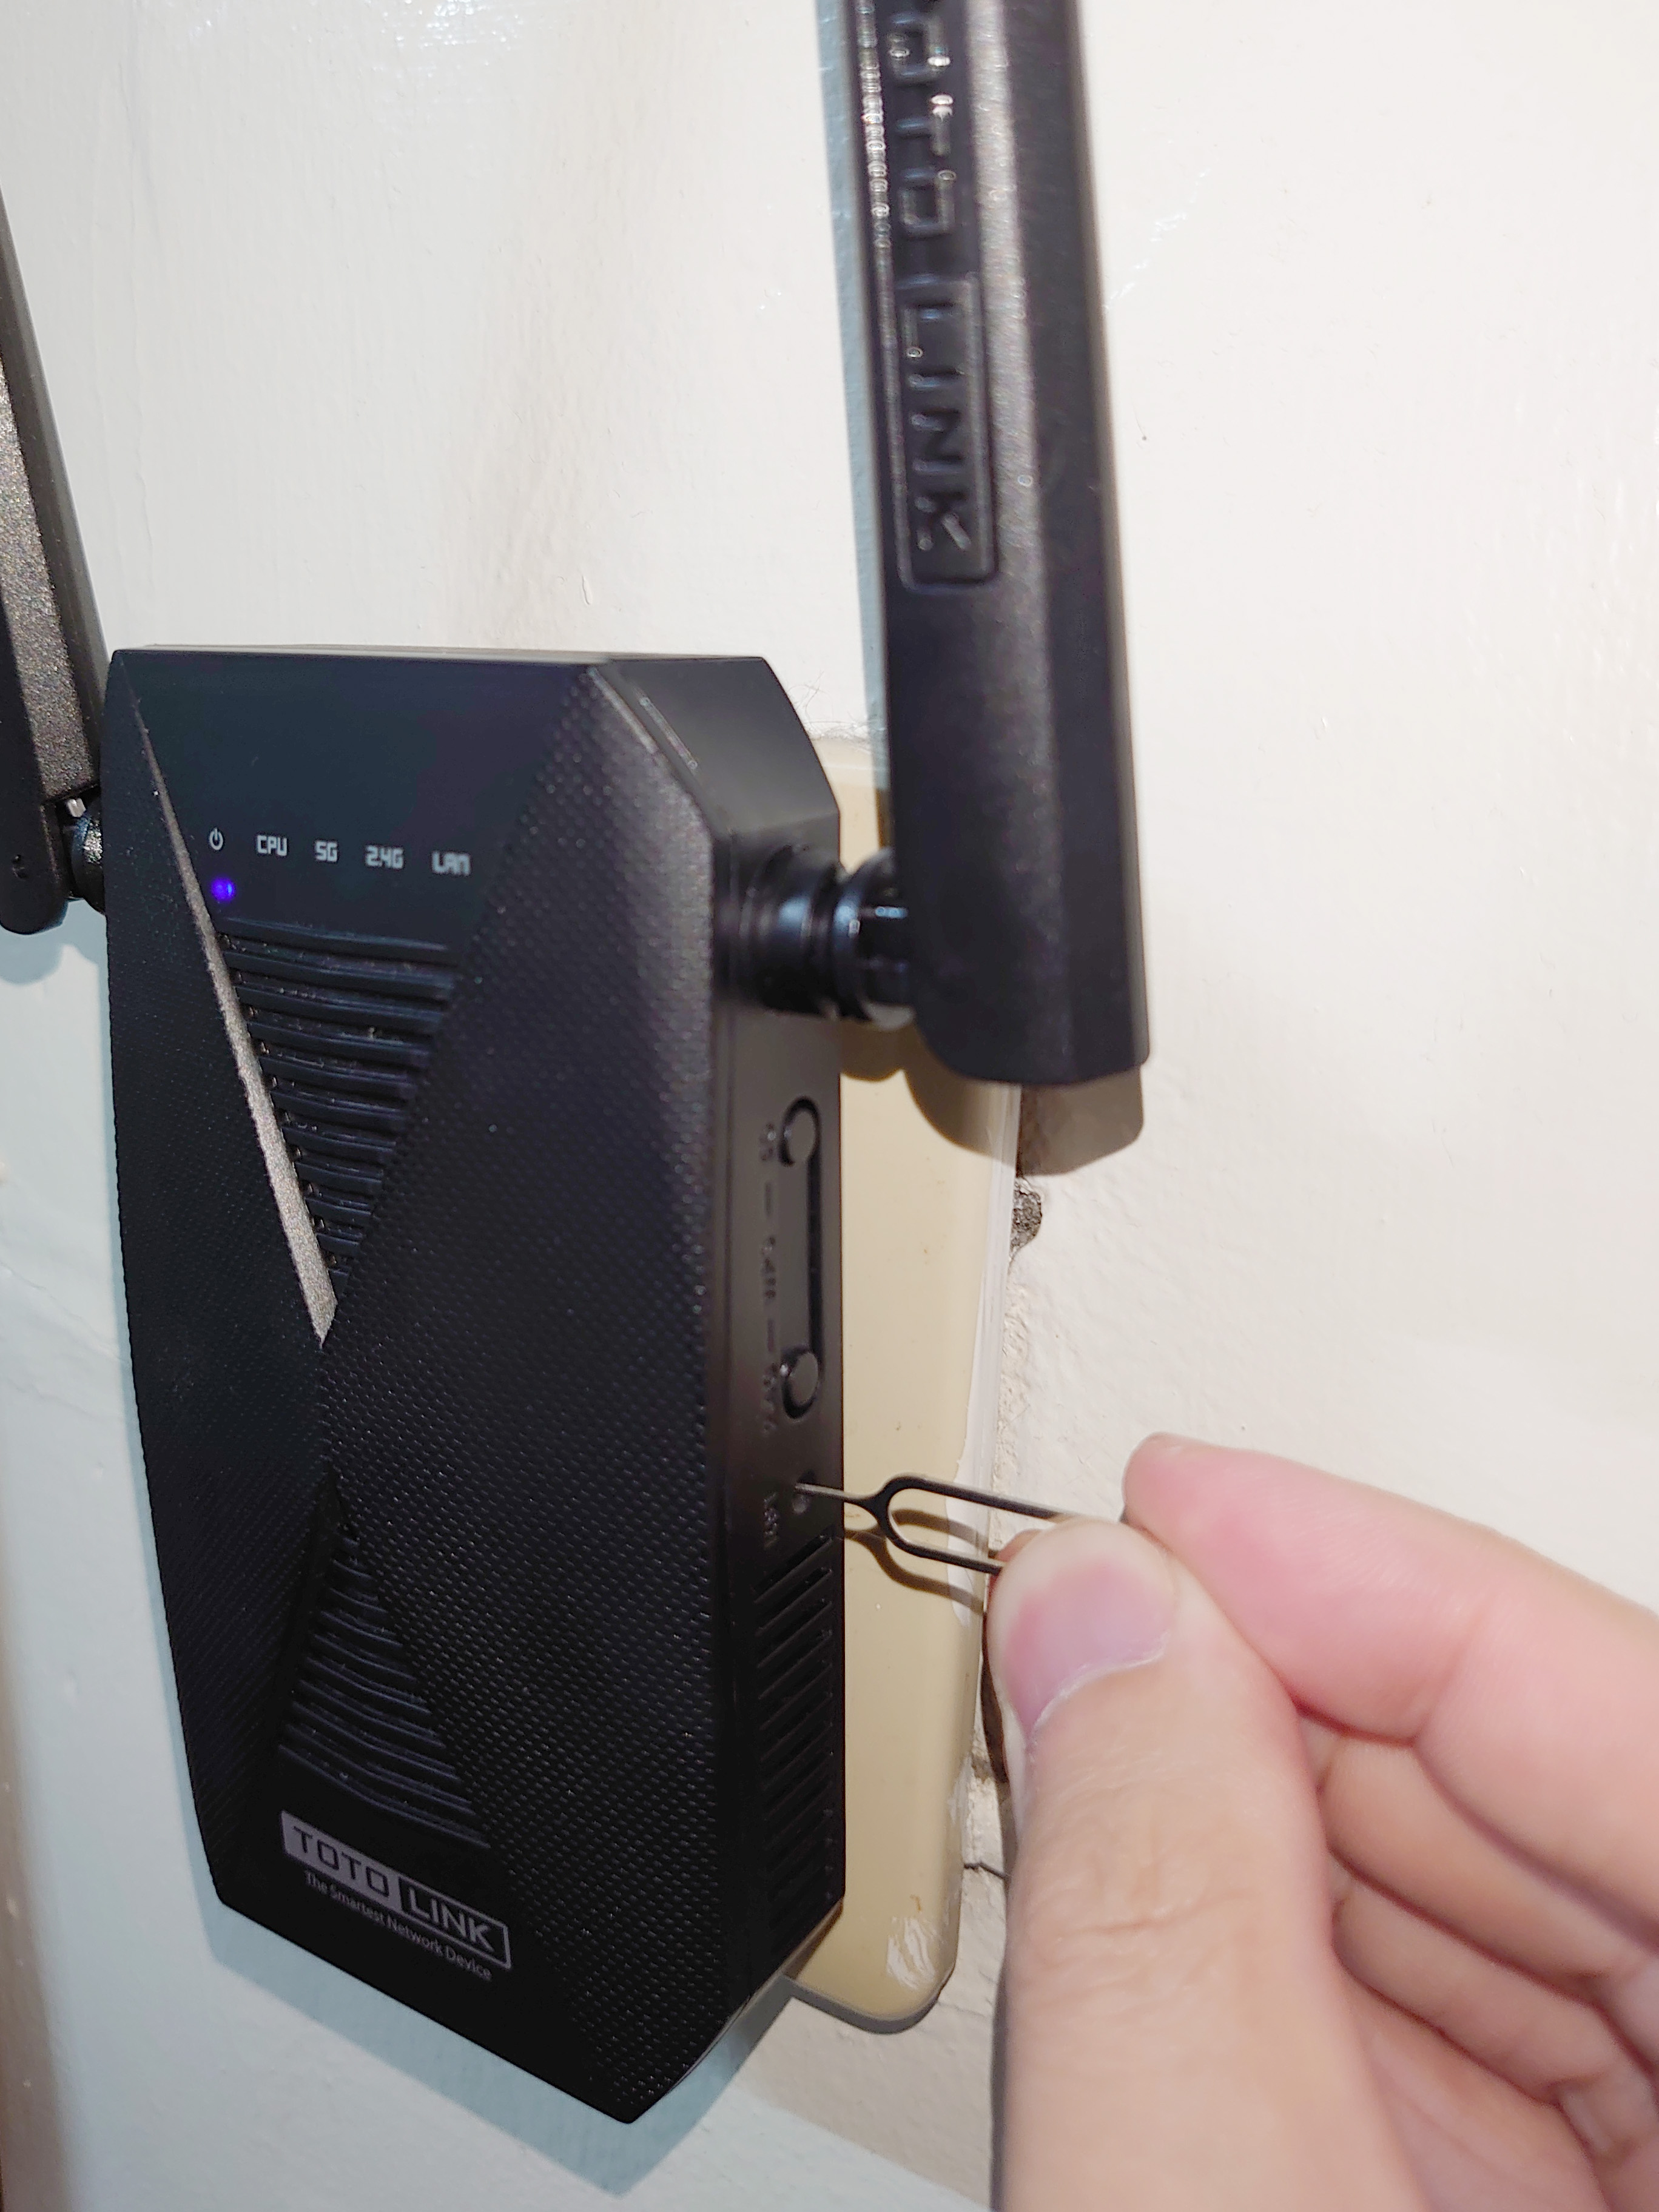 「開箱分享」訊號延伸無死角 TOTOLINK EX1200T 雙頻無線訊號強波器